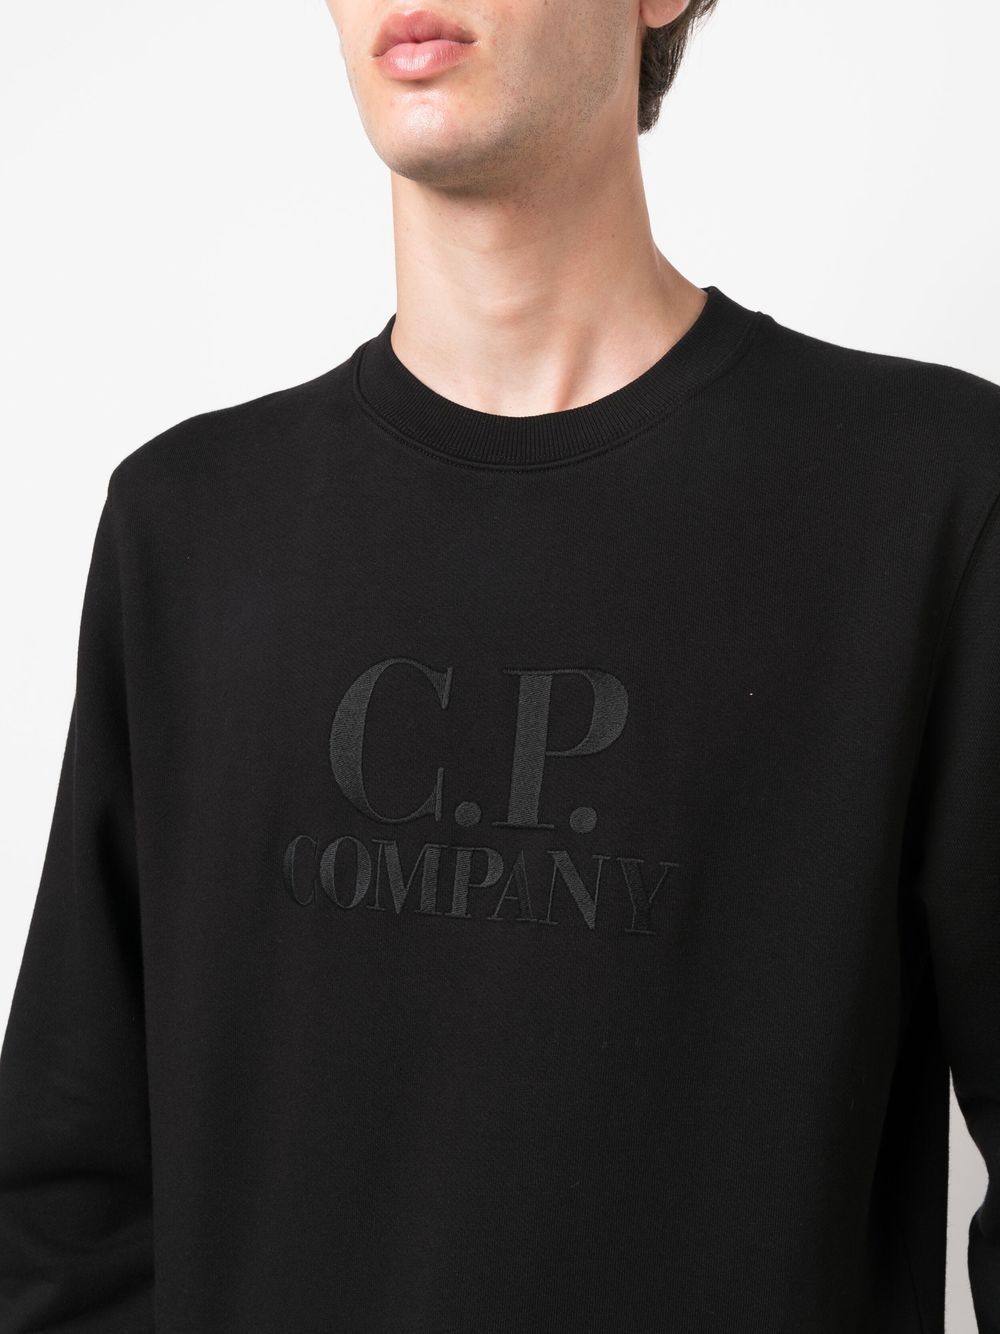 C.P Company Sweat Diagonal Raised Fleece Black - Lothaire